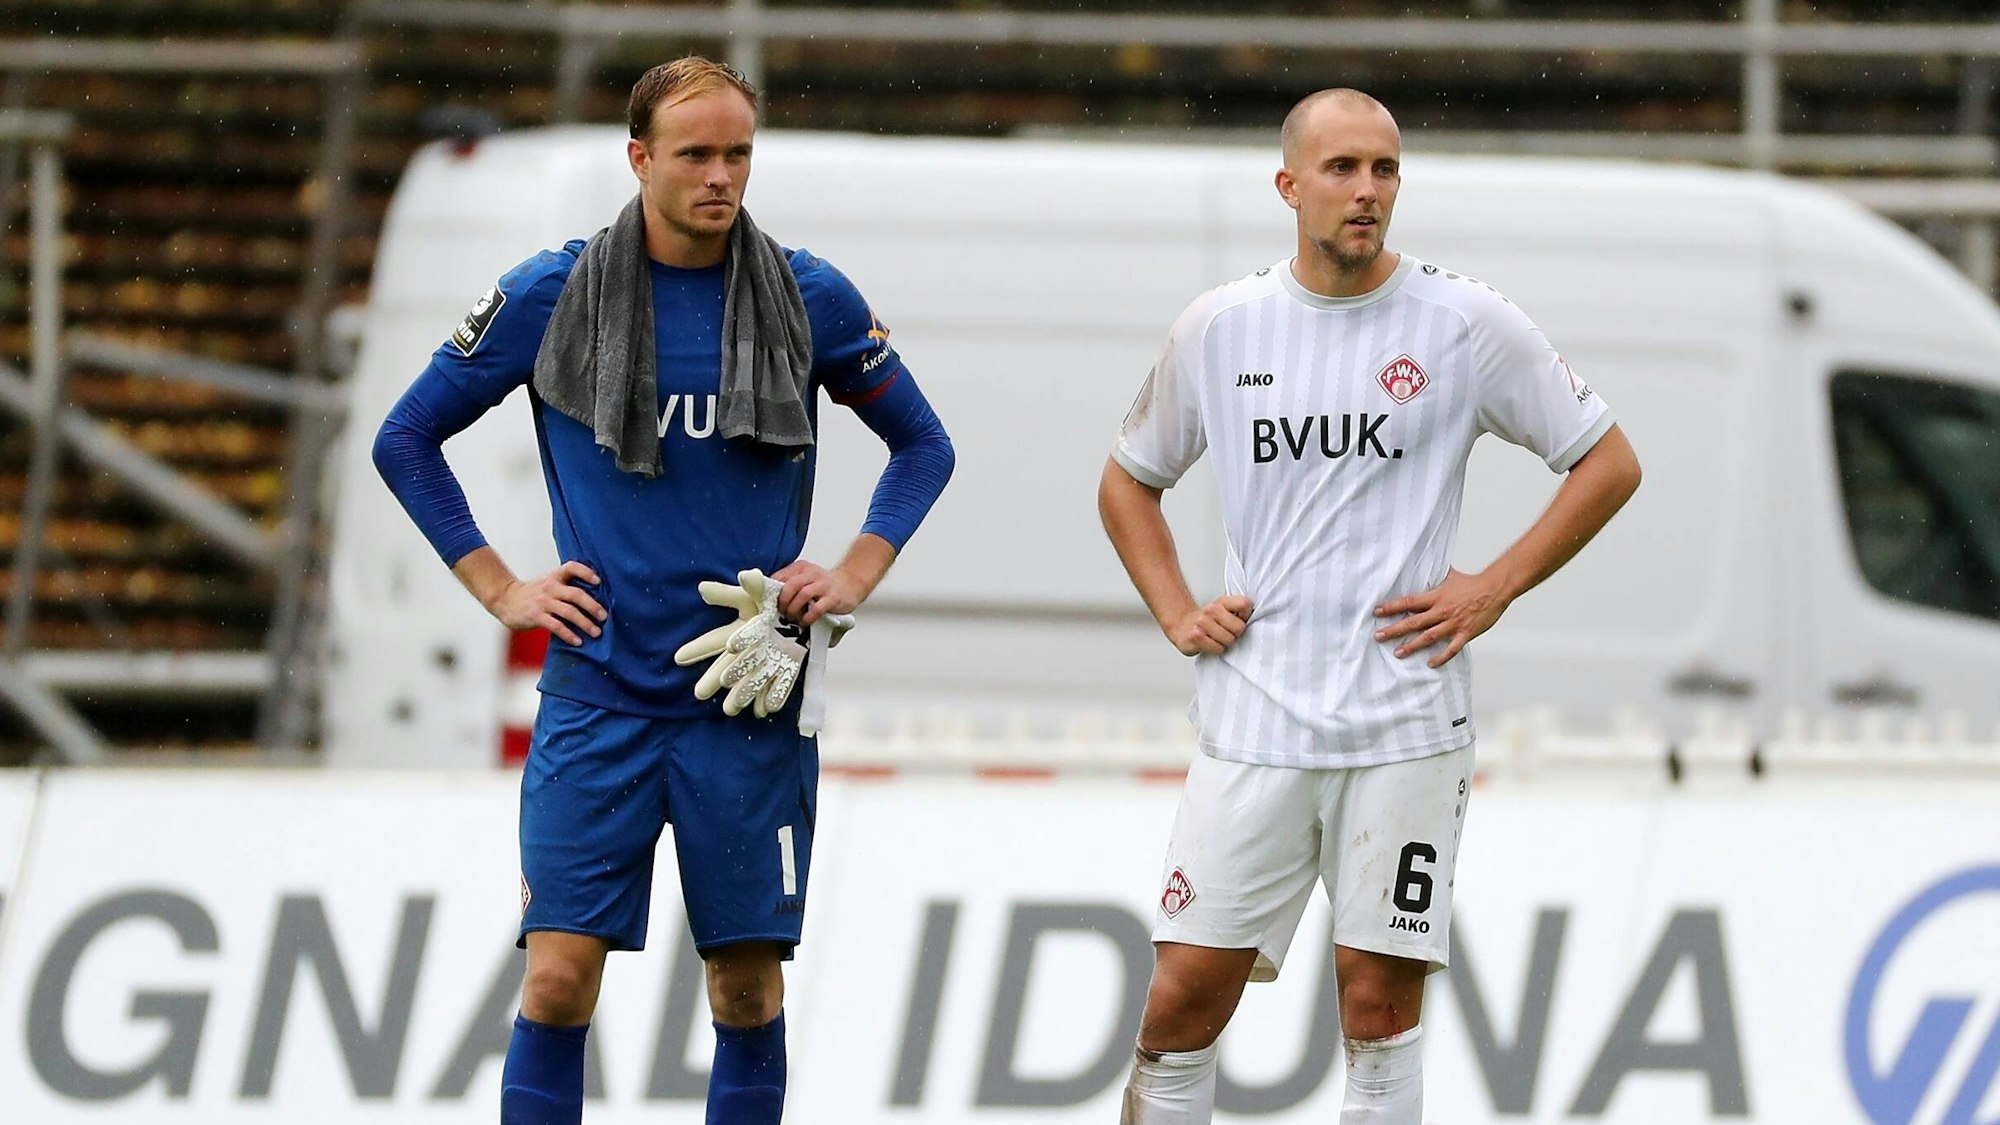 Torwart Hendrik Bonmann und Tobias Kraulich stehen mit Händen in den Hüften in Stadion und schauen enttäuscht drein.